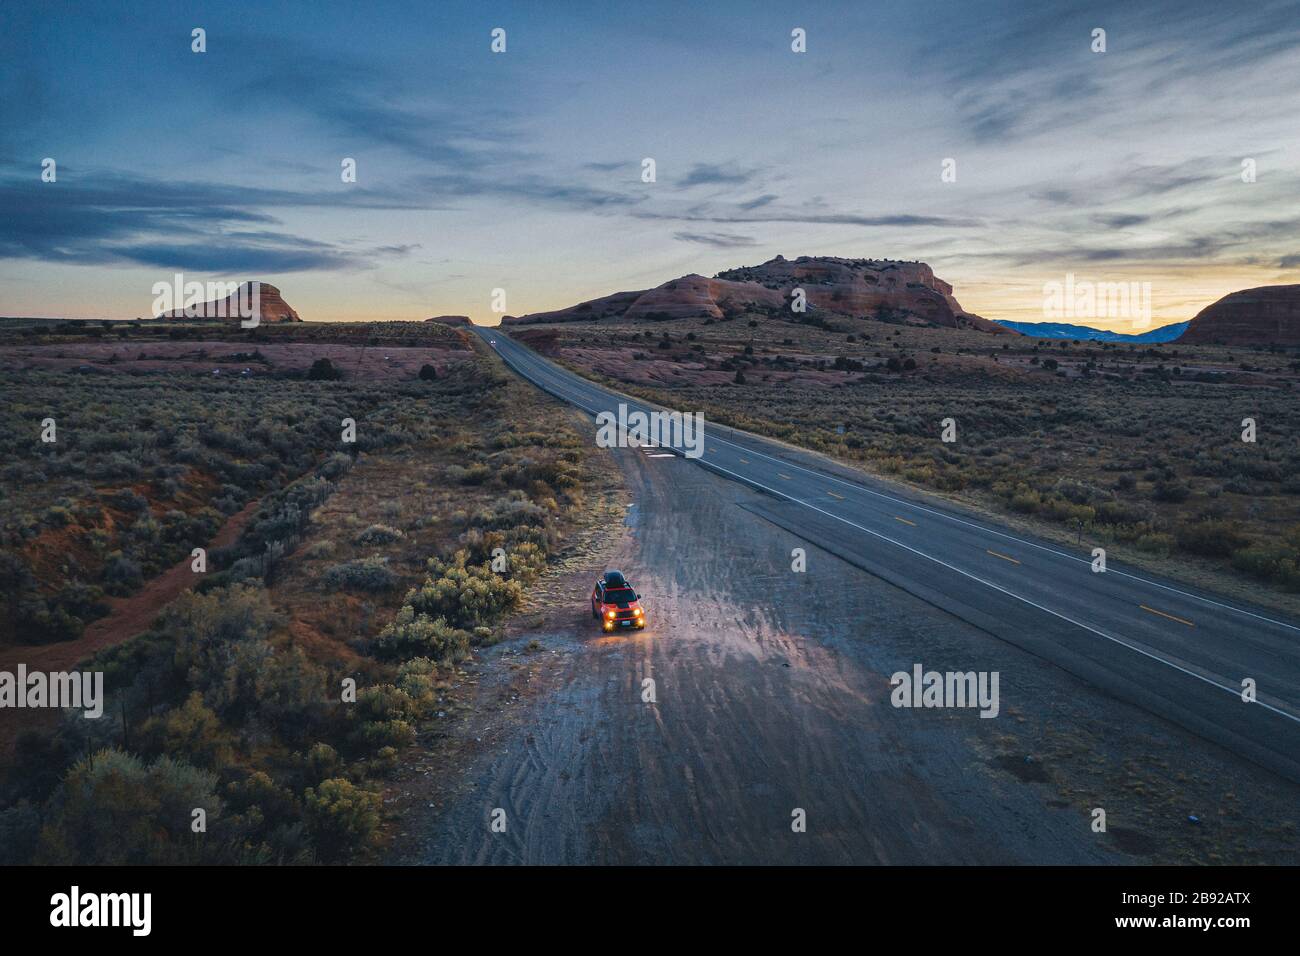 La route de l'Utah est isolée le soir avec une voiture tirée Banque D'Images